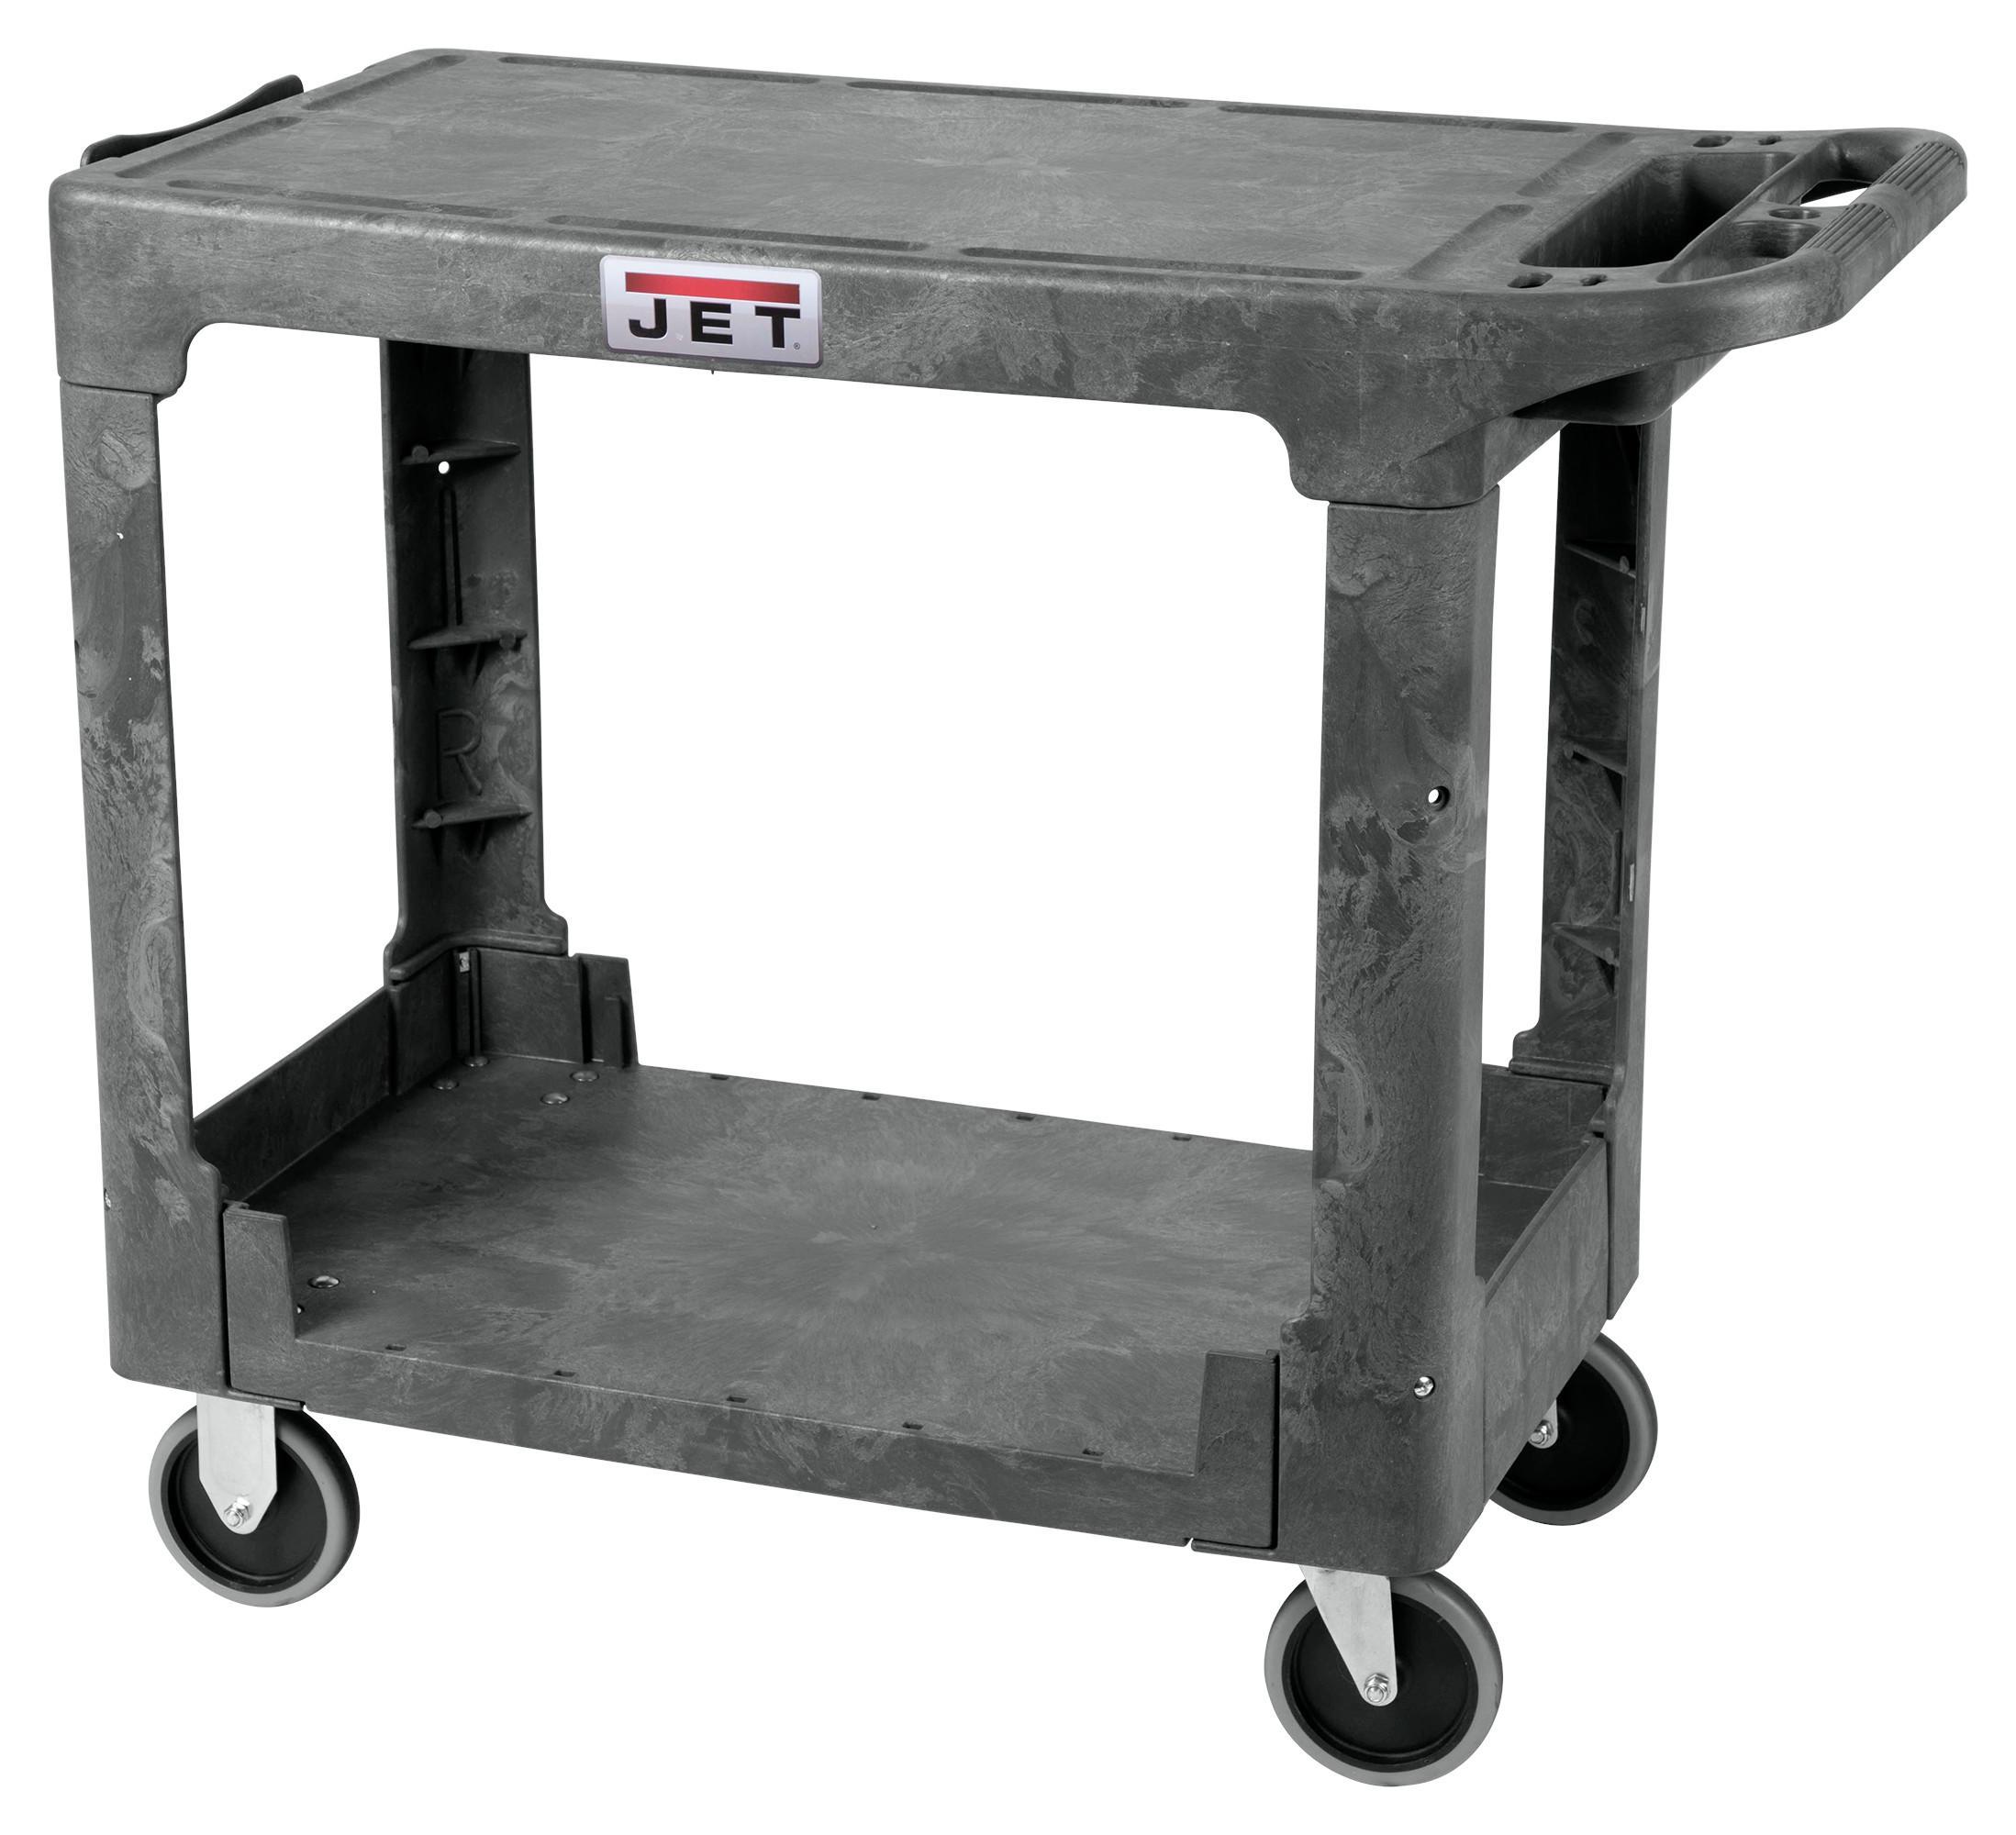  PUC-3819 Flat Top Resin Utility Cart 